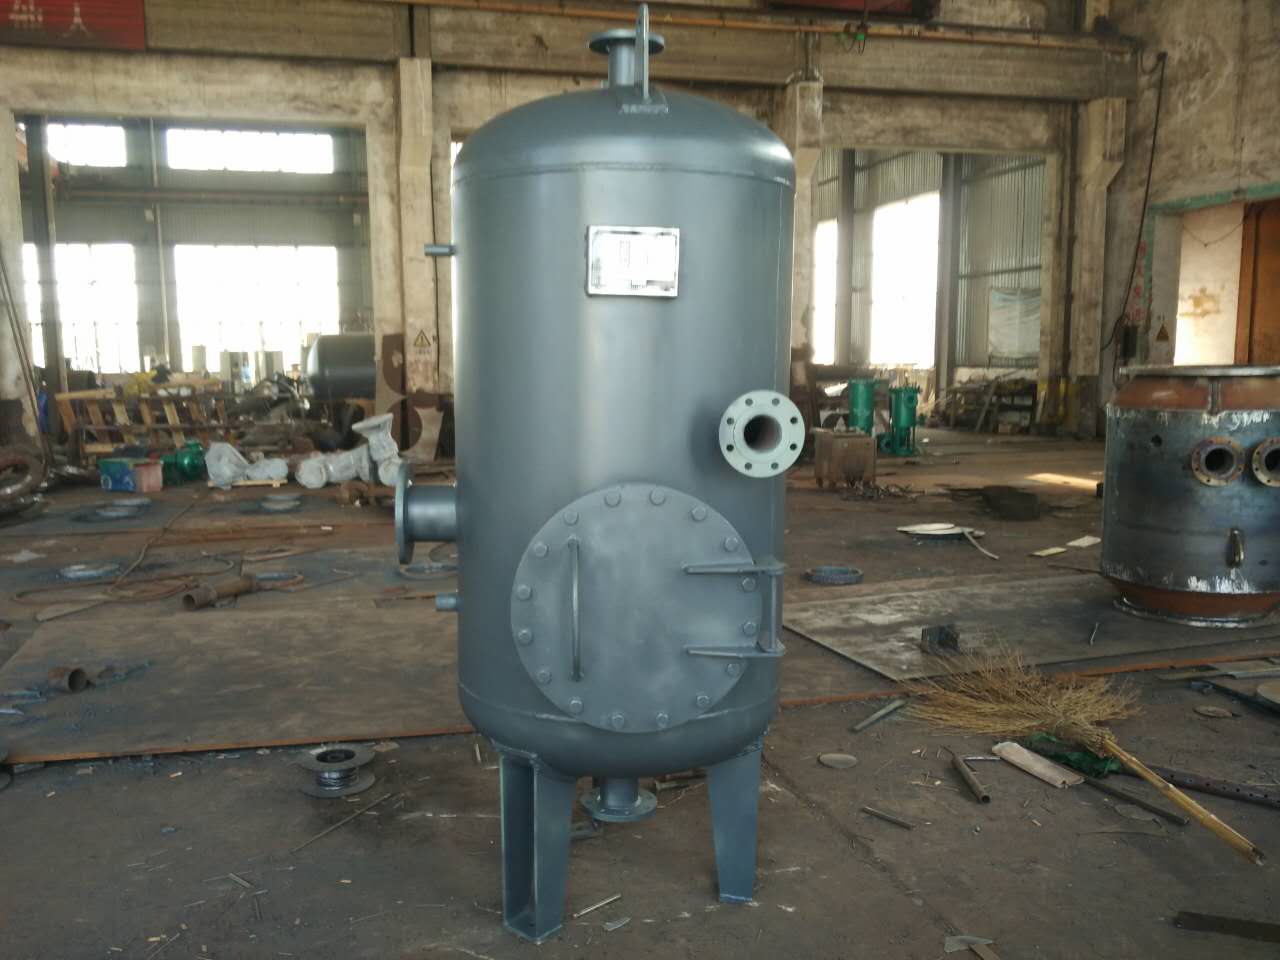 定期排污膨胀器-定期排污扩容器